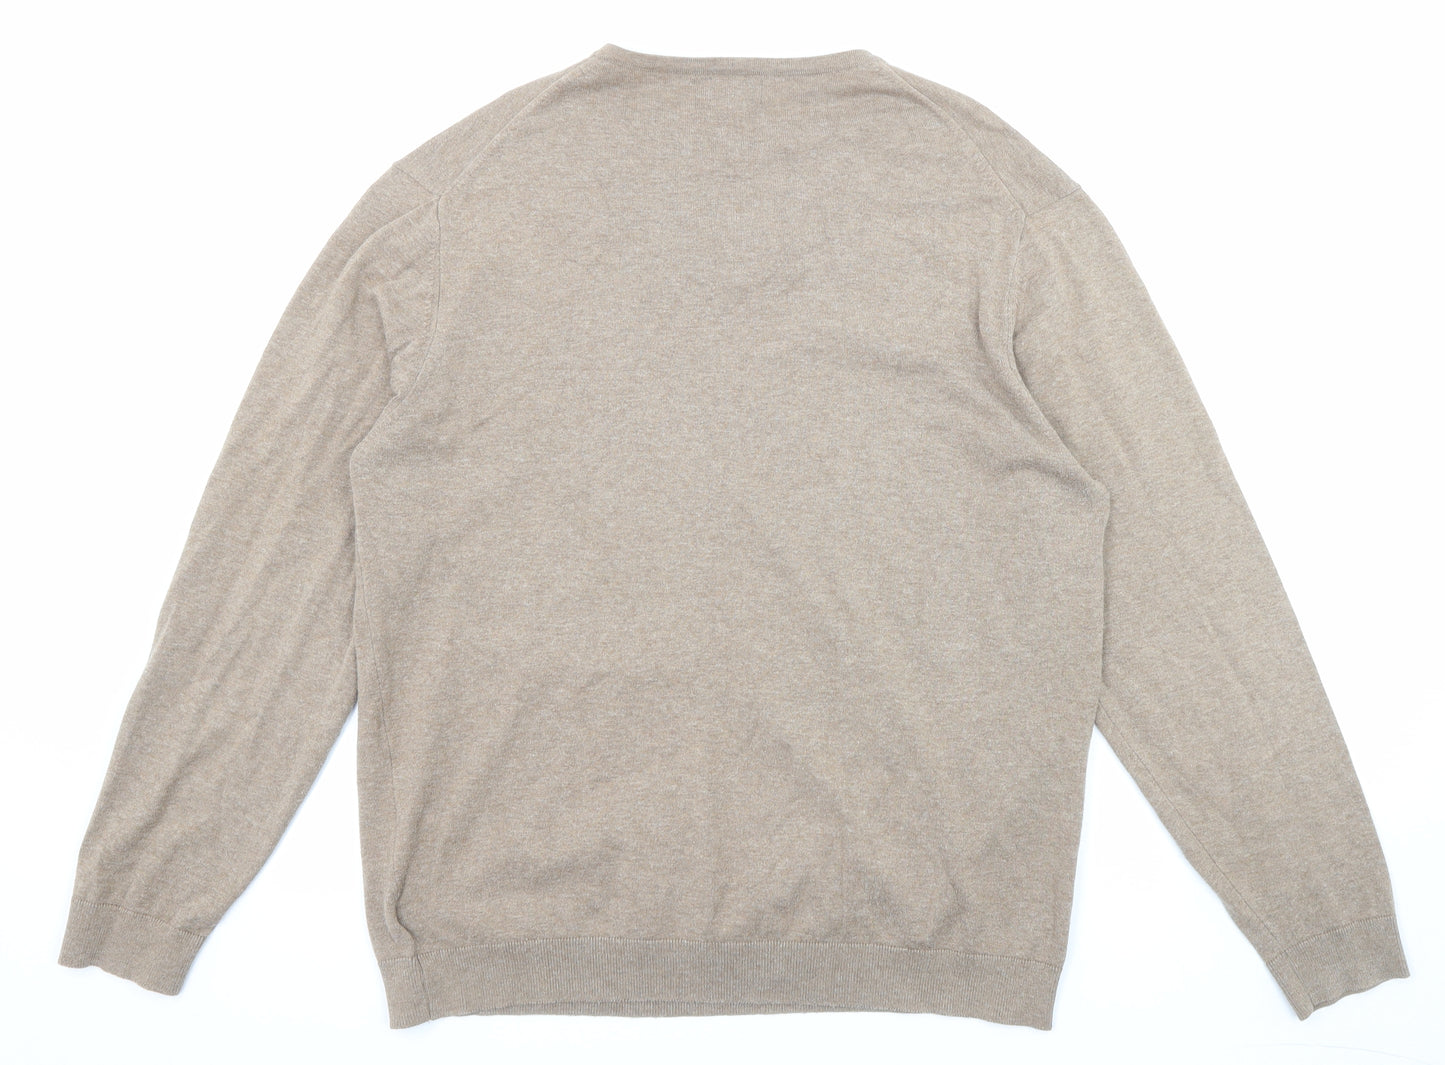 NEXT Mens Beige V-Neck Cotton Pullover Jumper Size L Long Sleeve